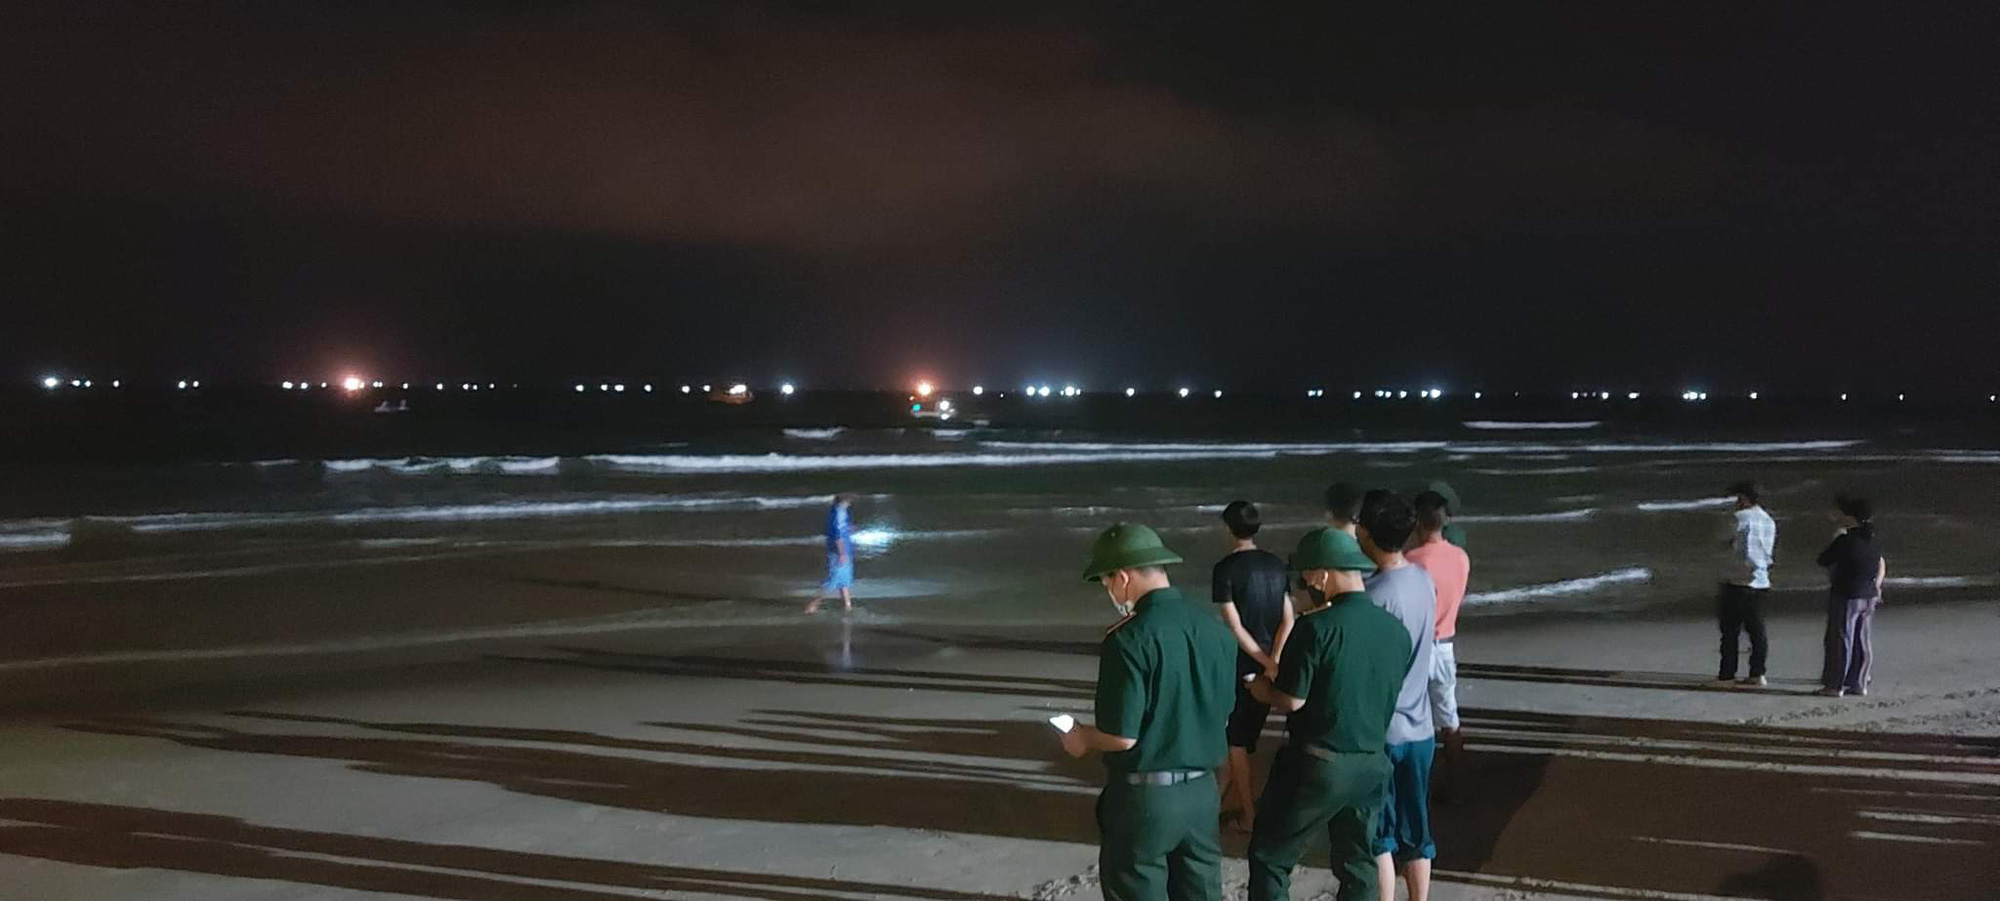 Đà Nẵng: Tắm biển đêm, 5 du khách bị nước cuốn trôi, người dân khẳng định 'nếu tắm trong vùng an toàn rất khó xảy ra tai nạn' - Ảnh 1